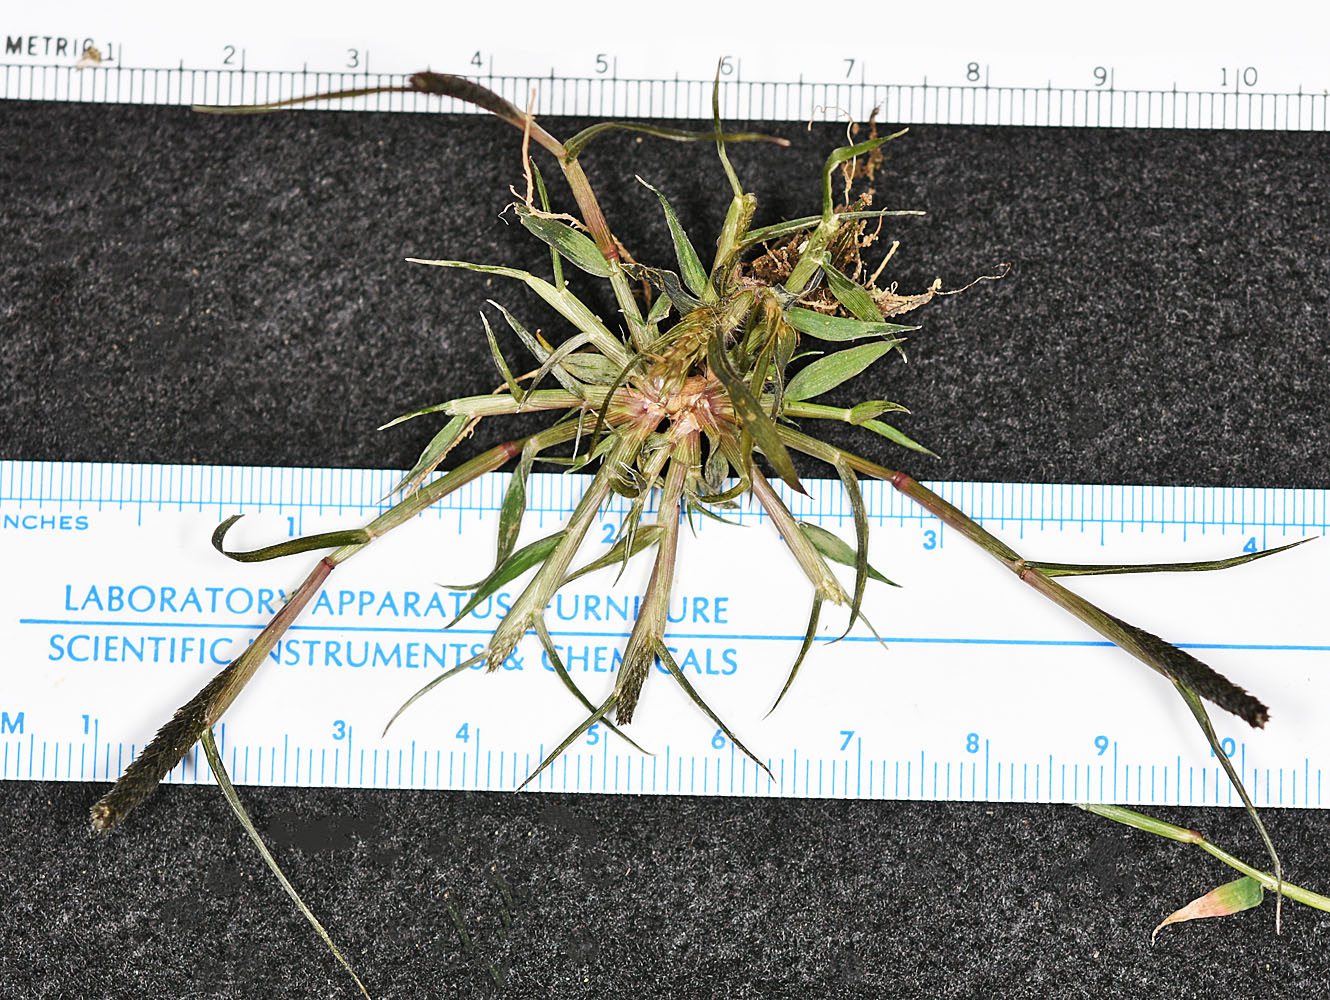 Flora of Eastern Washington Image: Crypsis alopecuroides